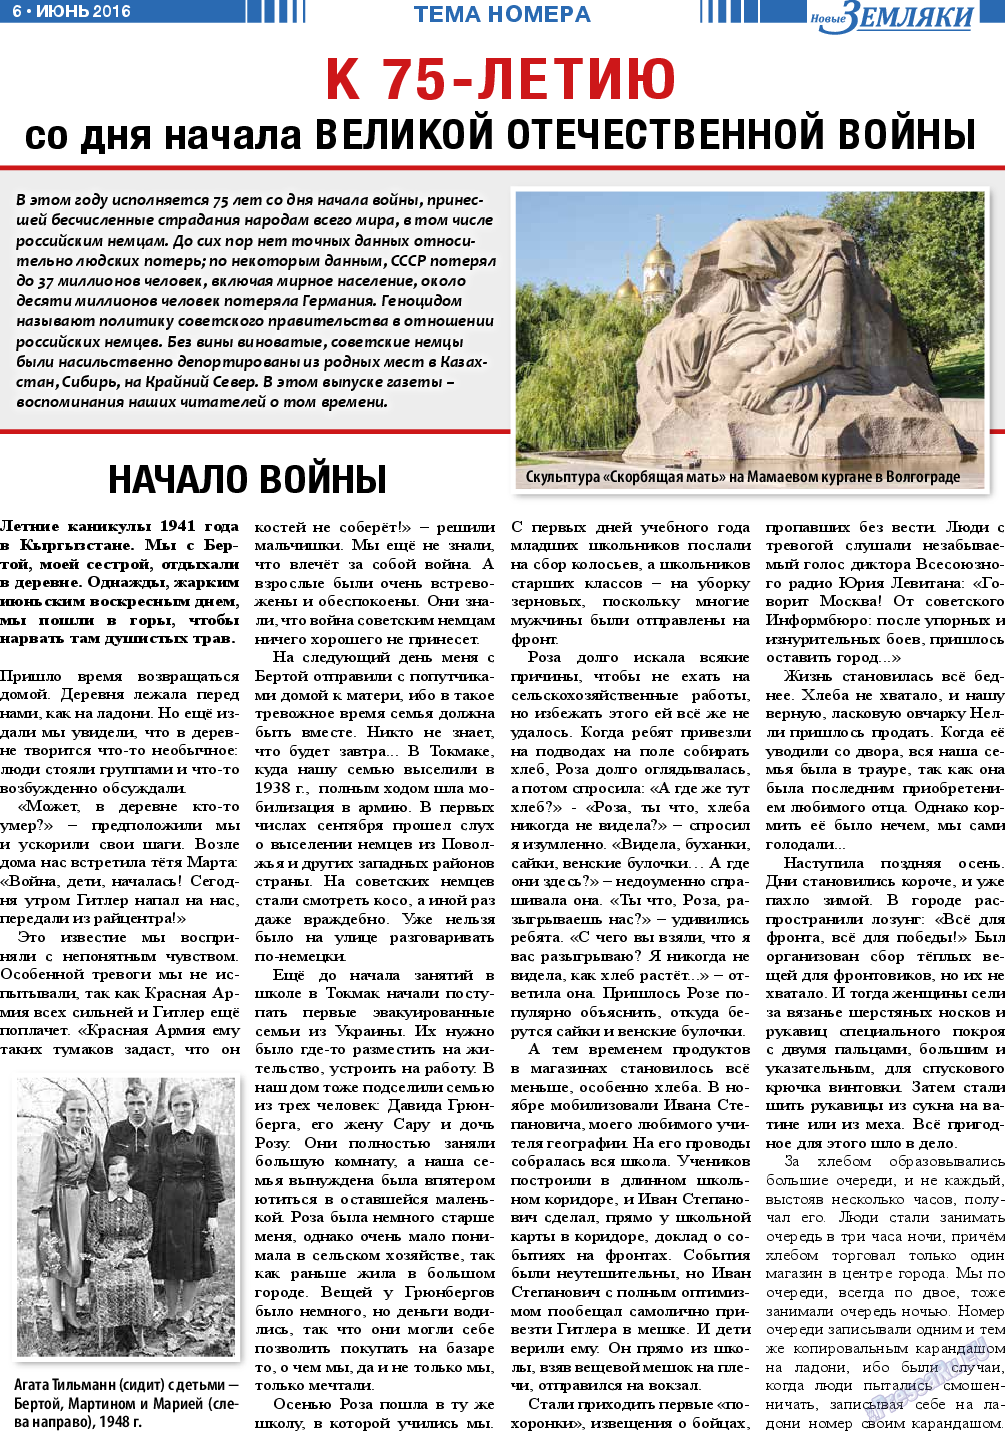 Новые Земляки, газета. 2016 №6 стр.6